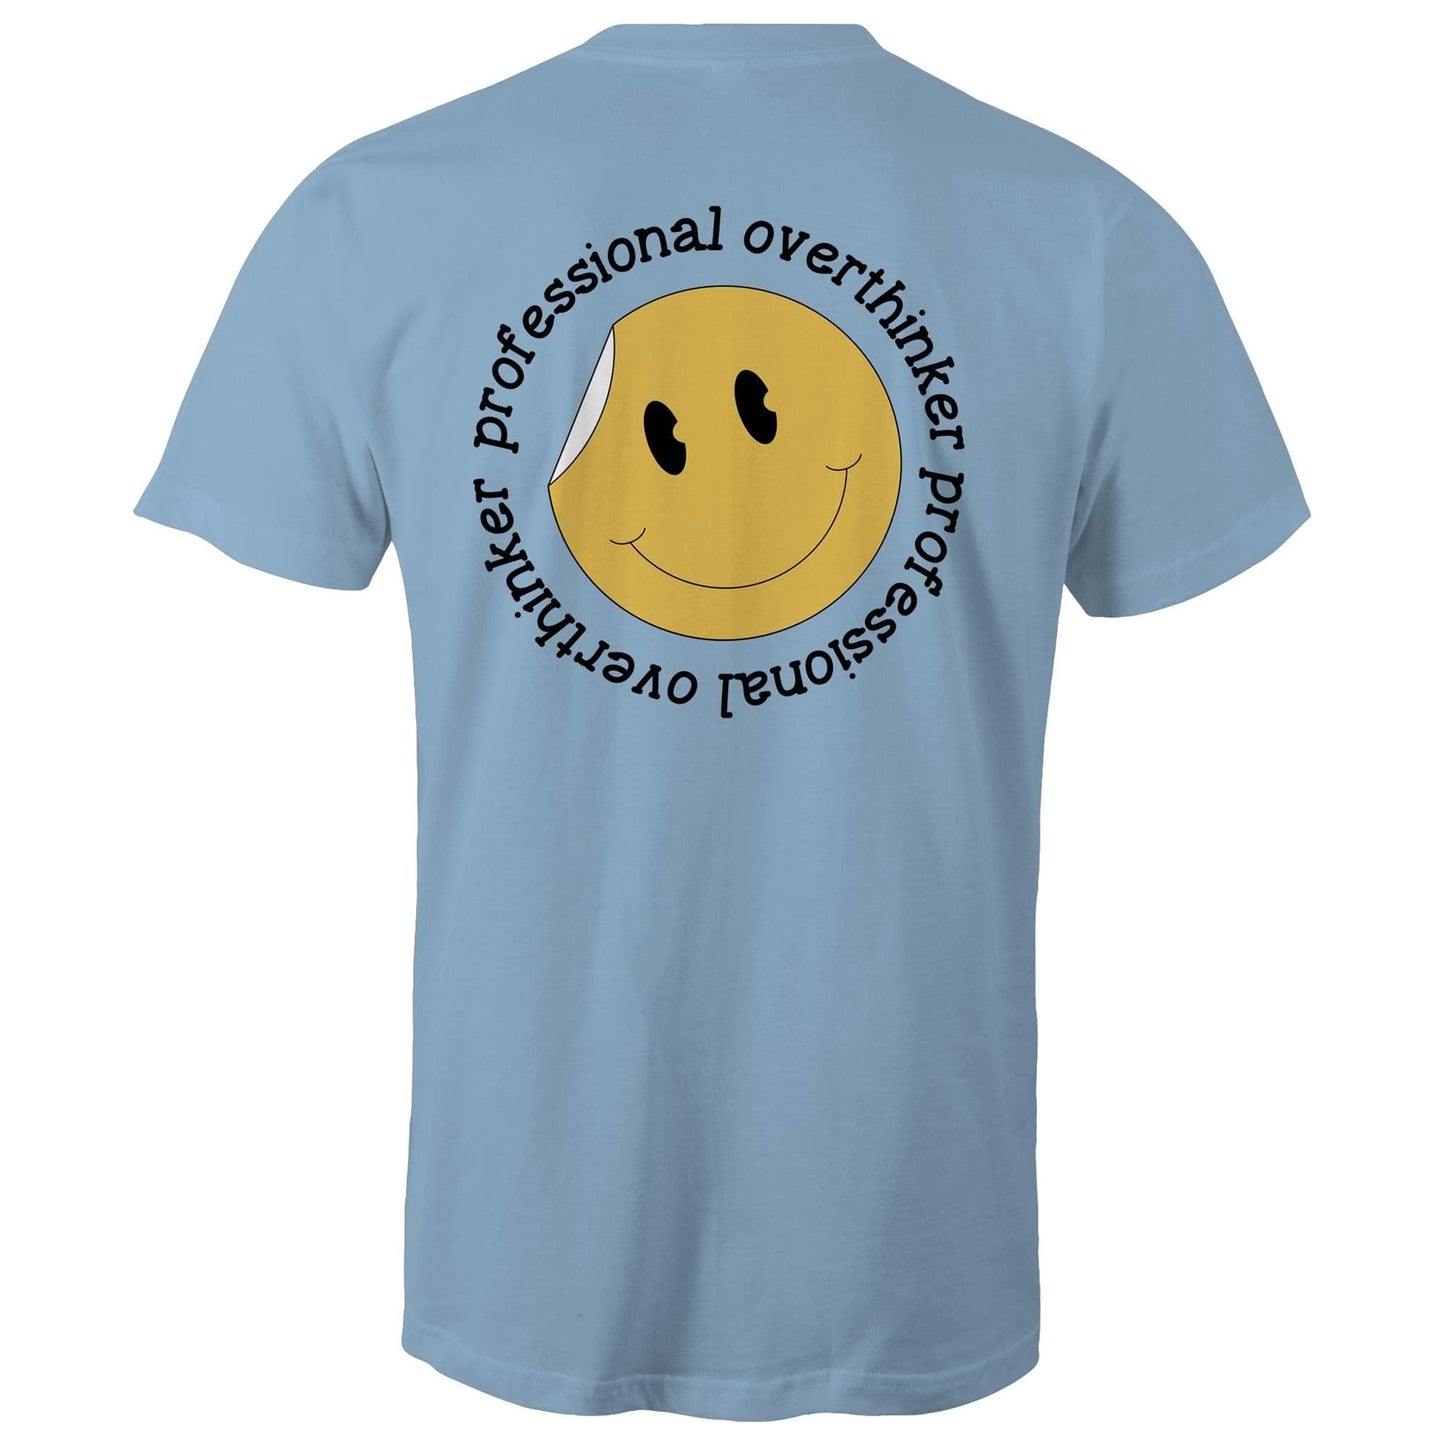 Mens T-Shirt - Professional Overthinker Smiley